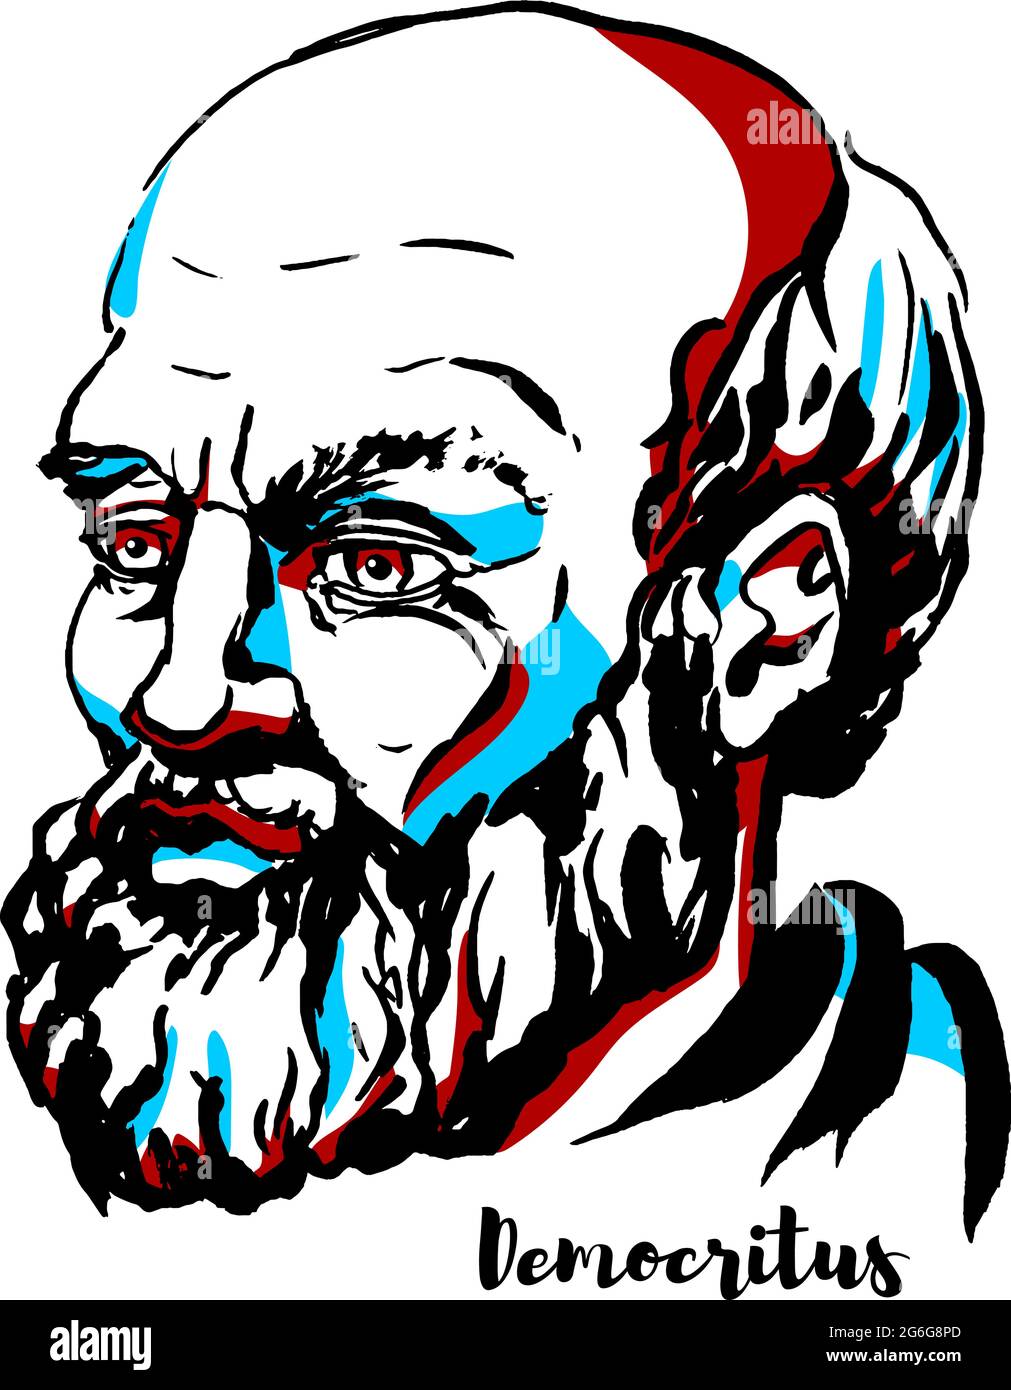 Portrait vectoriel gravé Democritus avec contours d'encre. Le philosophe grec ancien pré-socratique s'est surtout souvenu aujourd'hui pour sa formulation d'un ato Illustration de Vecteur